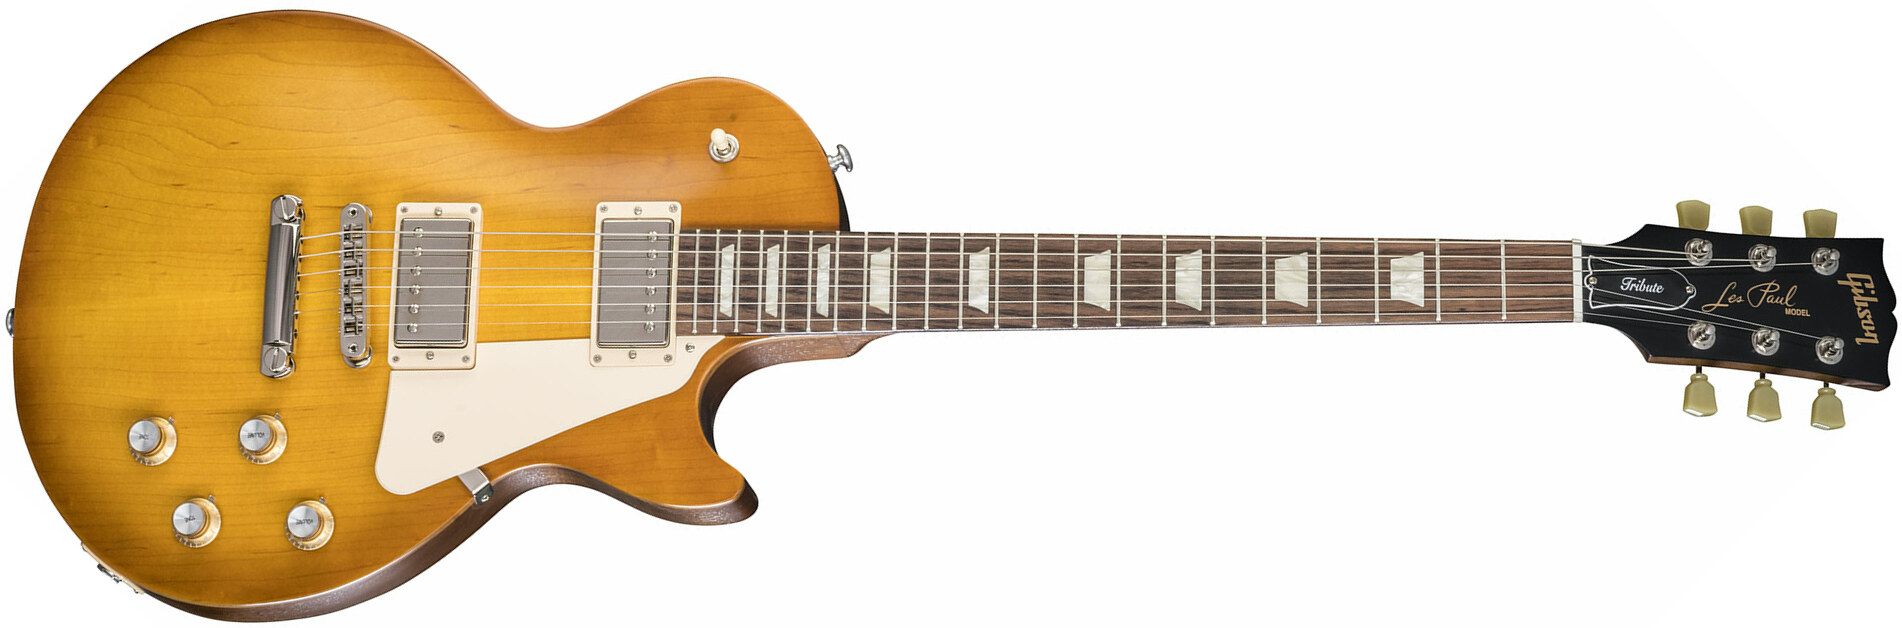 Gibson Les Paul Tribute 2018 - Satin Faded Honeyburst - Guitare Électrique Single Cut - Main picture